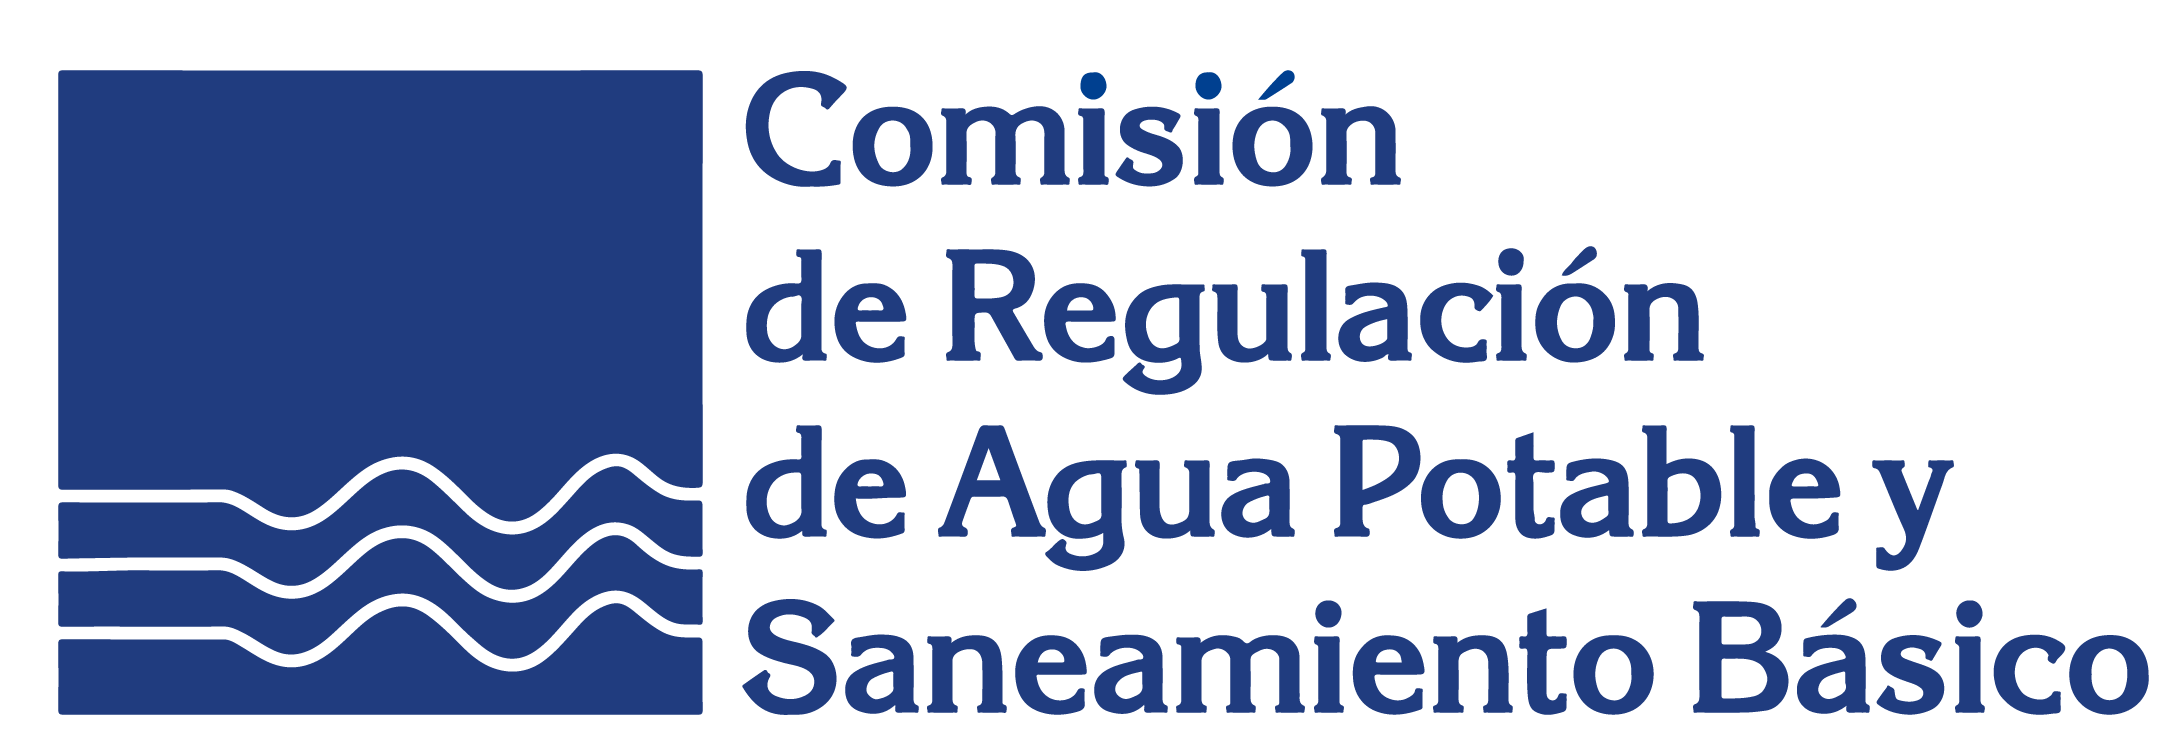 Comisión de Regulación de Agua Potable y Saneamiento Básico 